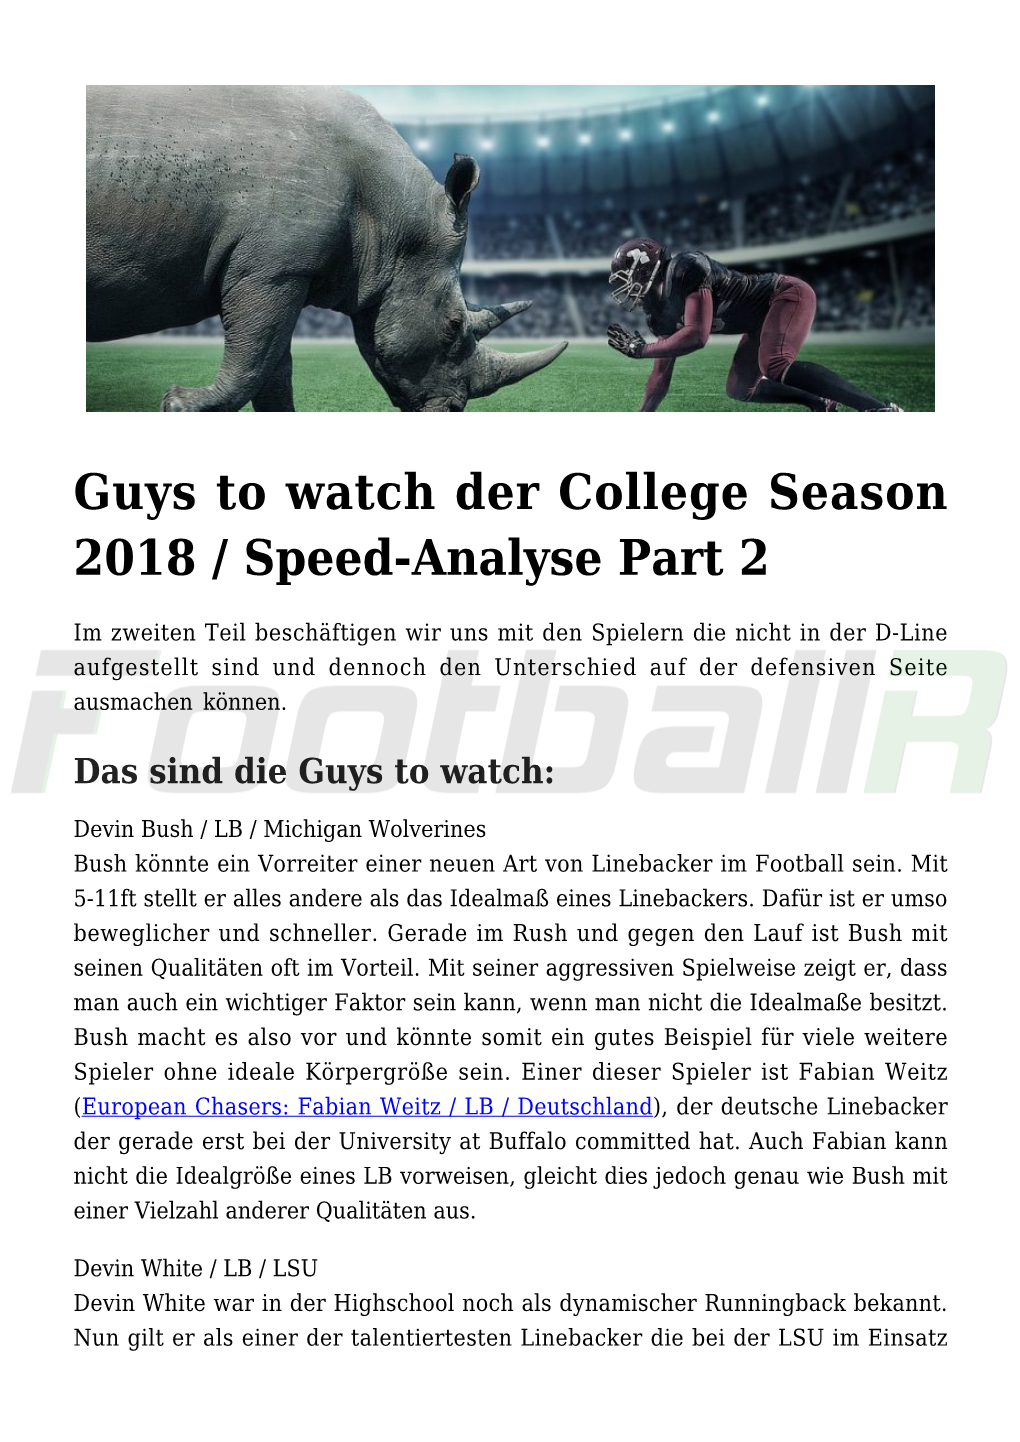 Guys to Watch Der College Season 2018 / Speed-Analyse Part 2